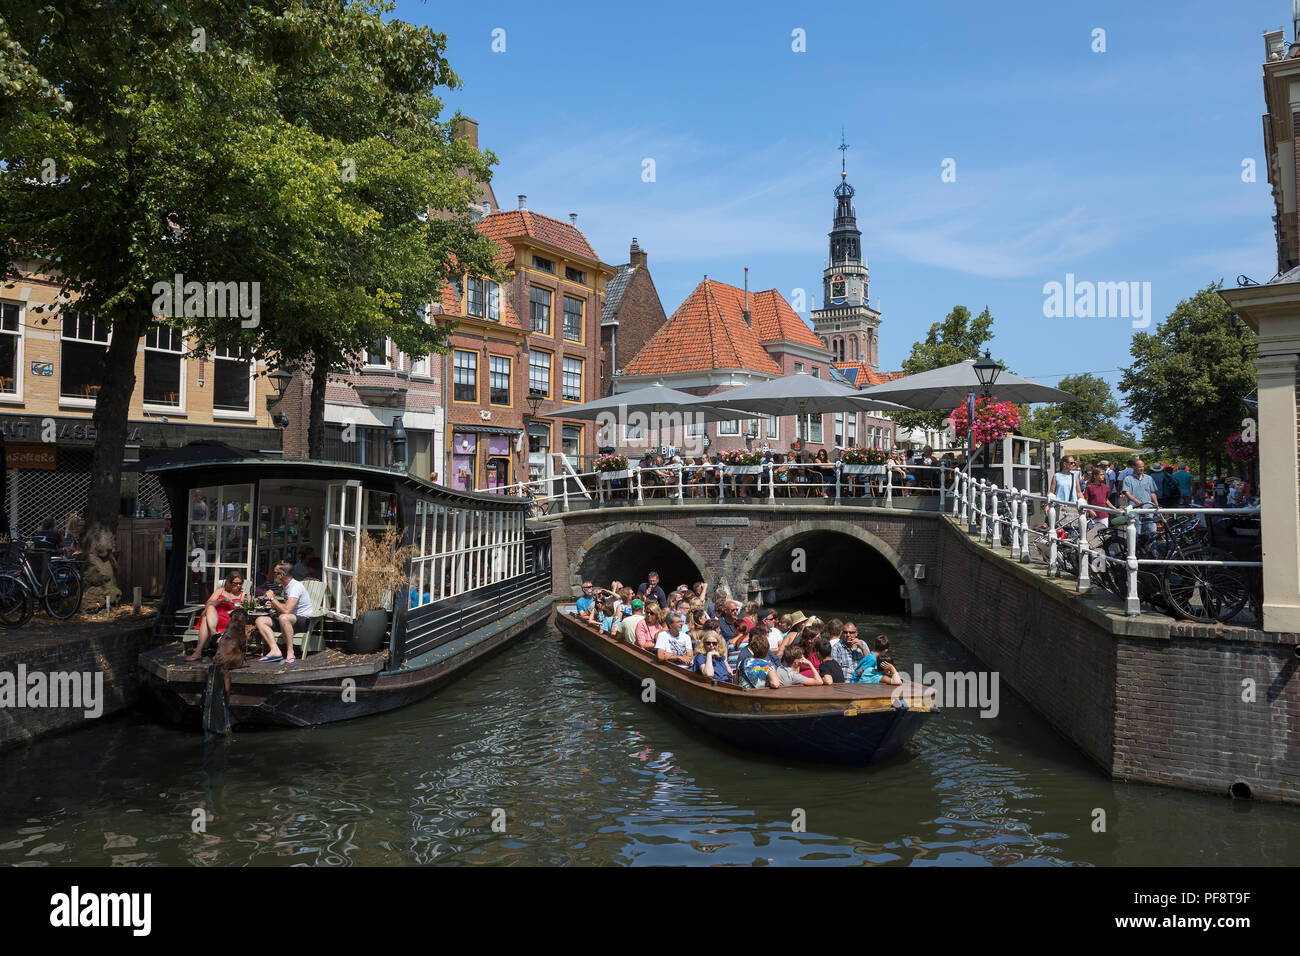 Alkmaar, Niederlande - 20. Juli 2018: die touristischen Sehenswürdigkeiten Bootsfahrt im historischen Zentrum von Alkmaar Stockfoto